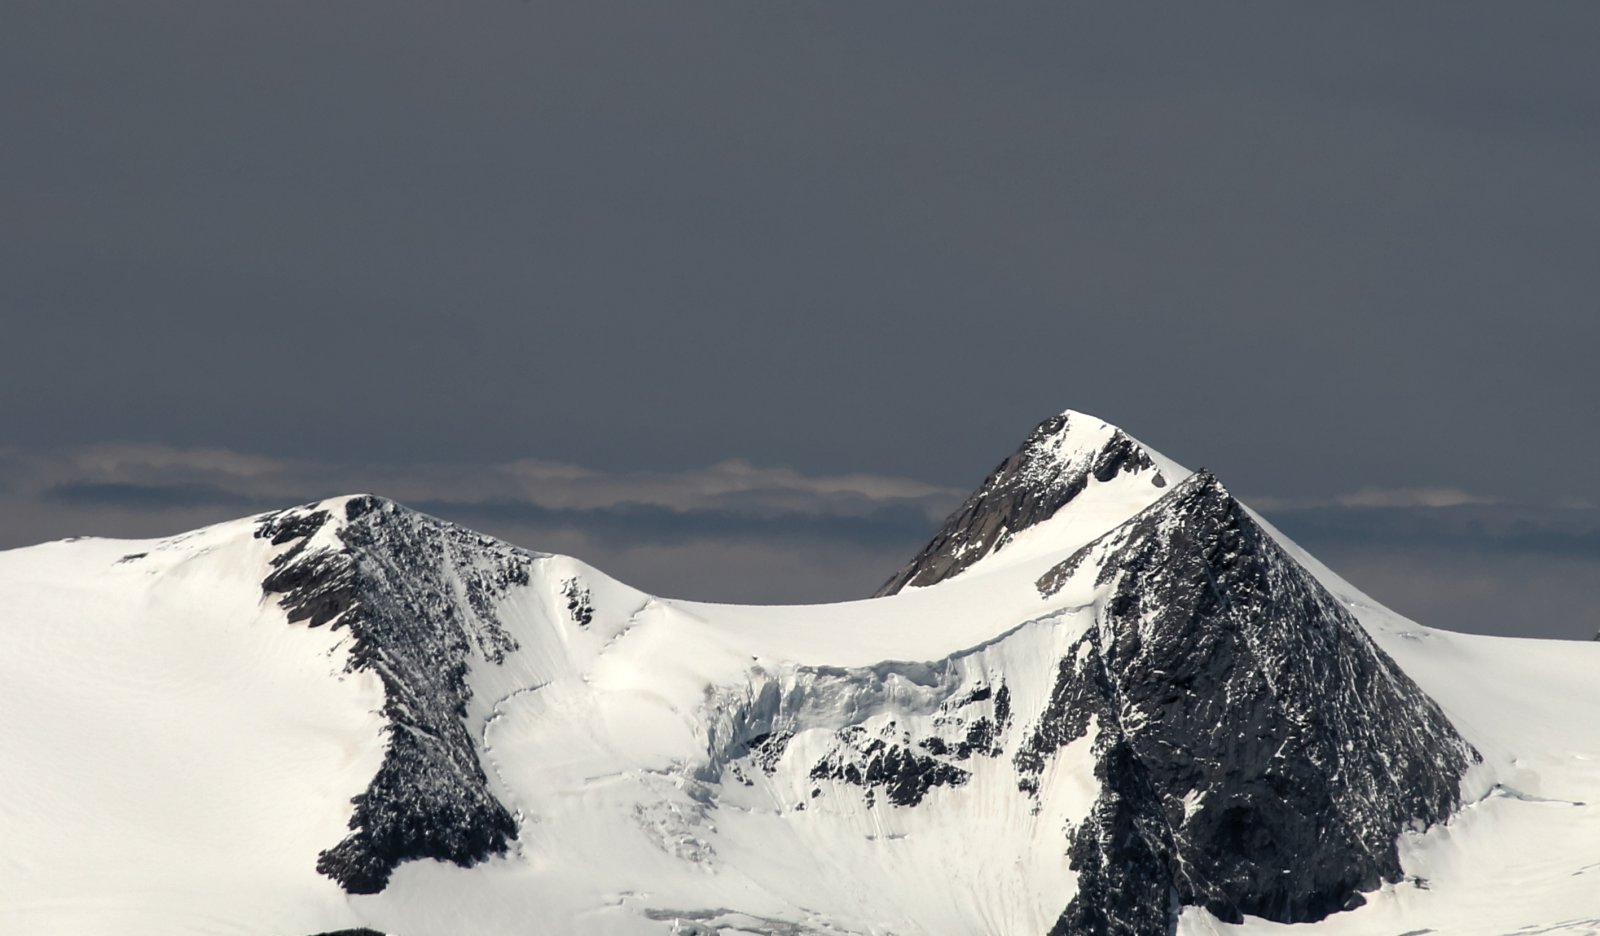 A Magas-Tauern gleccser és hegyivilága